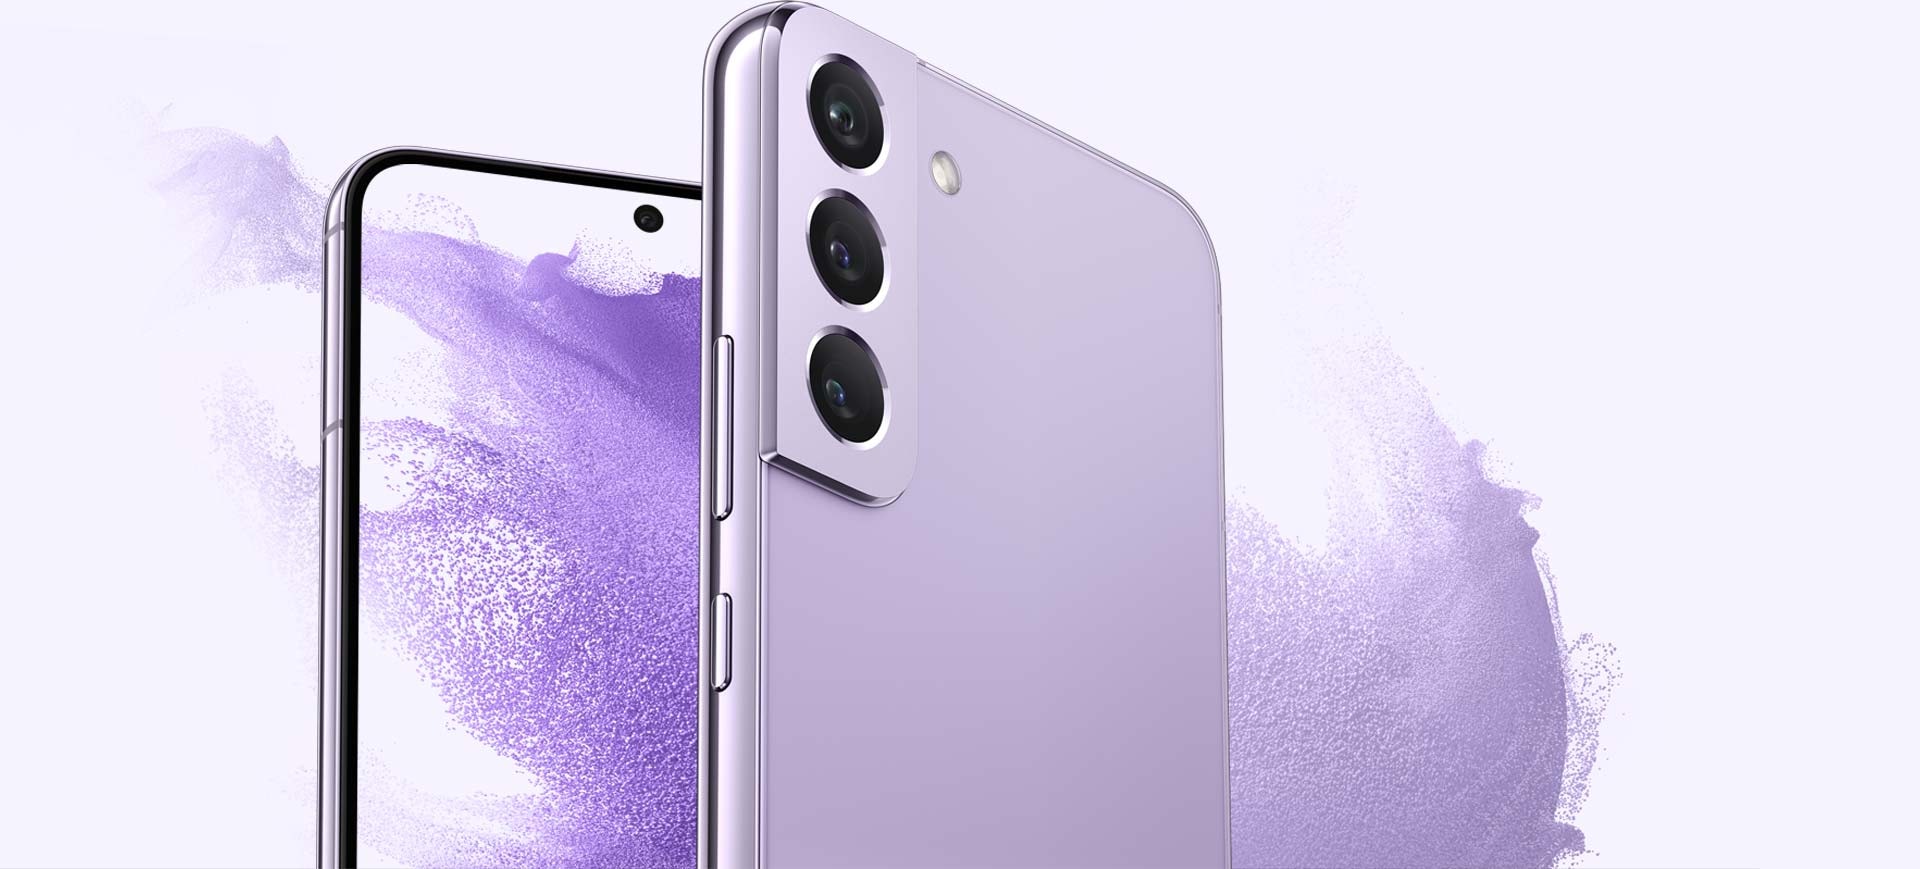 兩支幻夜紫的 Galaxy S22 手機。其中一支展示紫色波浪狀桌布的手機螢幕，紫色波浪繼續穿過螢幕至手機周圍。另一支手機傾斜展示側面和背面，與正面展示的 Galaxy S22 略微重疊。